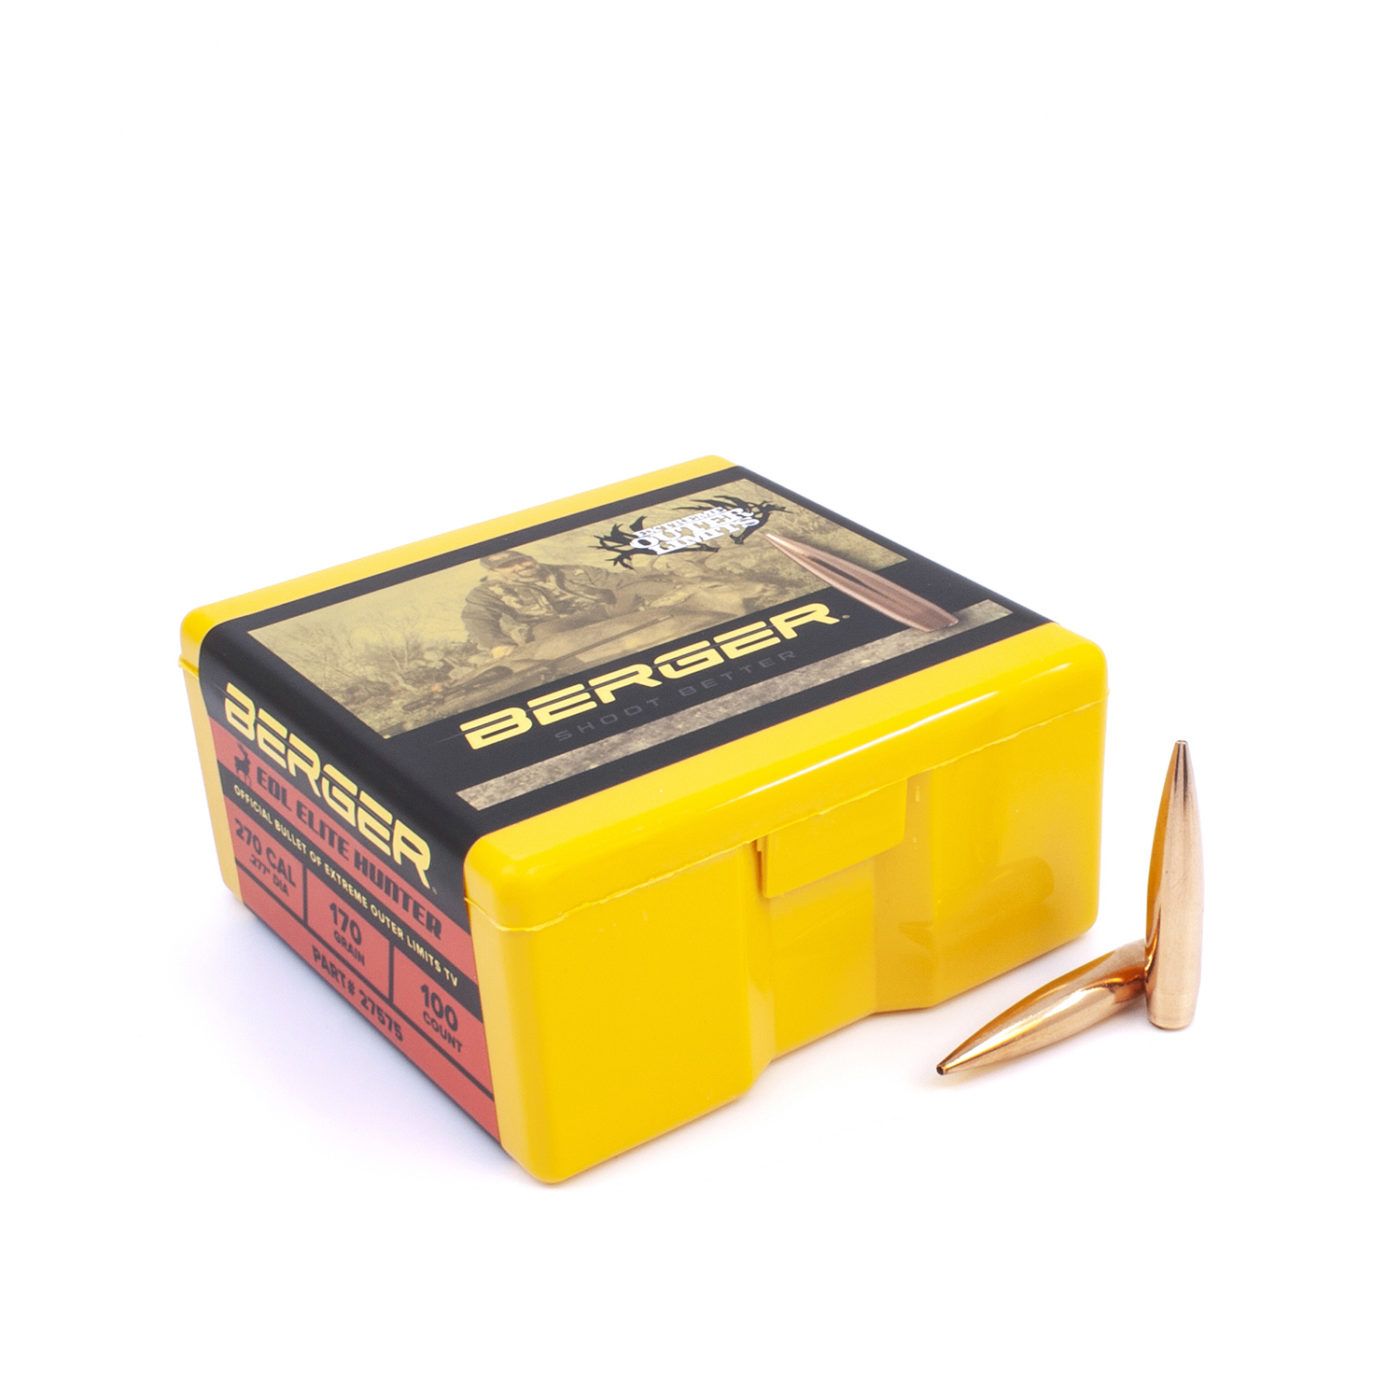 Berger Bullets - .270 cal, 170 gr. EOL Elite Hunter - Box of 100